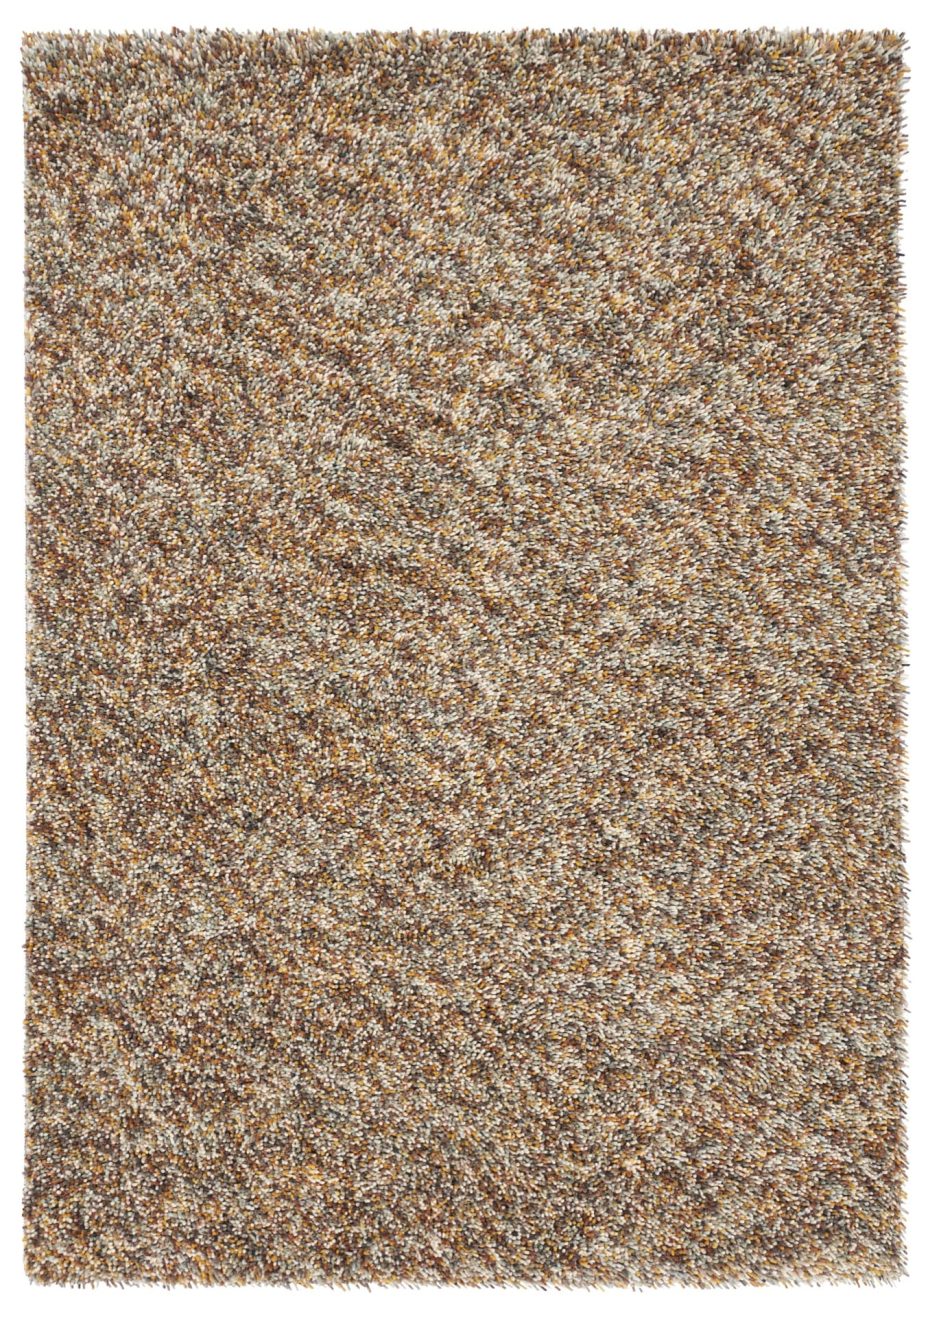 Pop Art 66906 rug by Brink